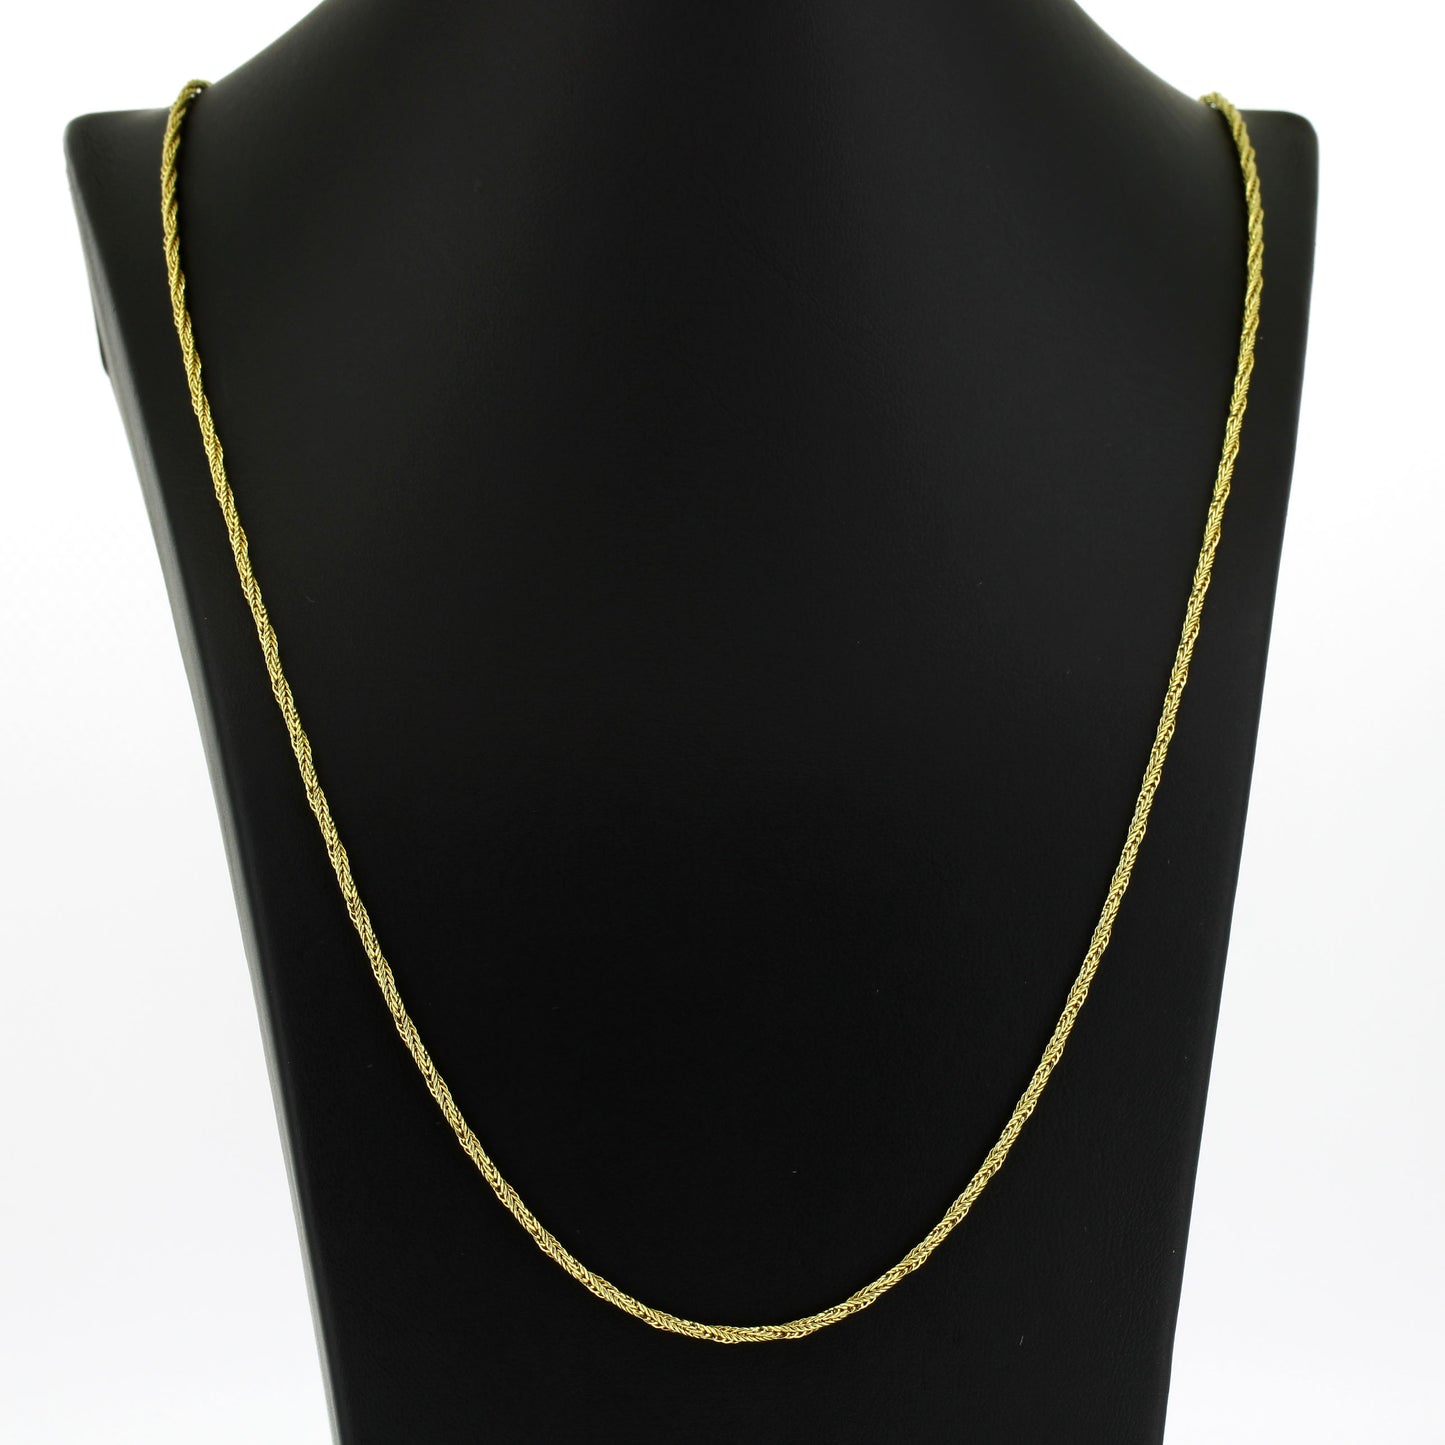 Lange Halskette geflochten 585 Gold 14 Kt Gelbgold 70cm - Wert 1270,-